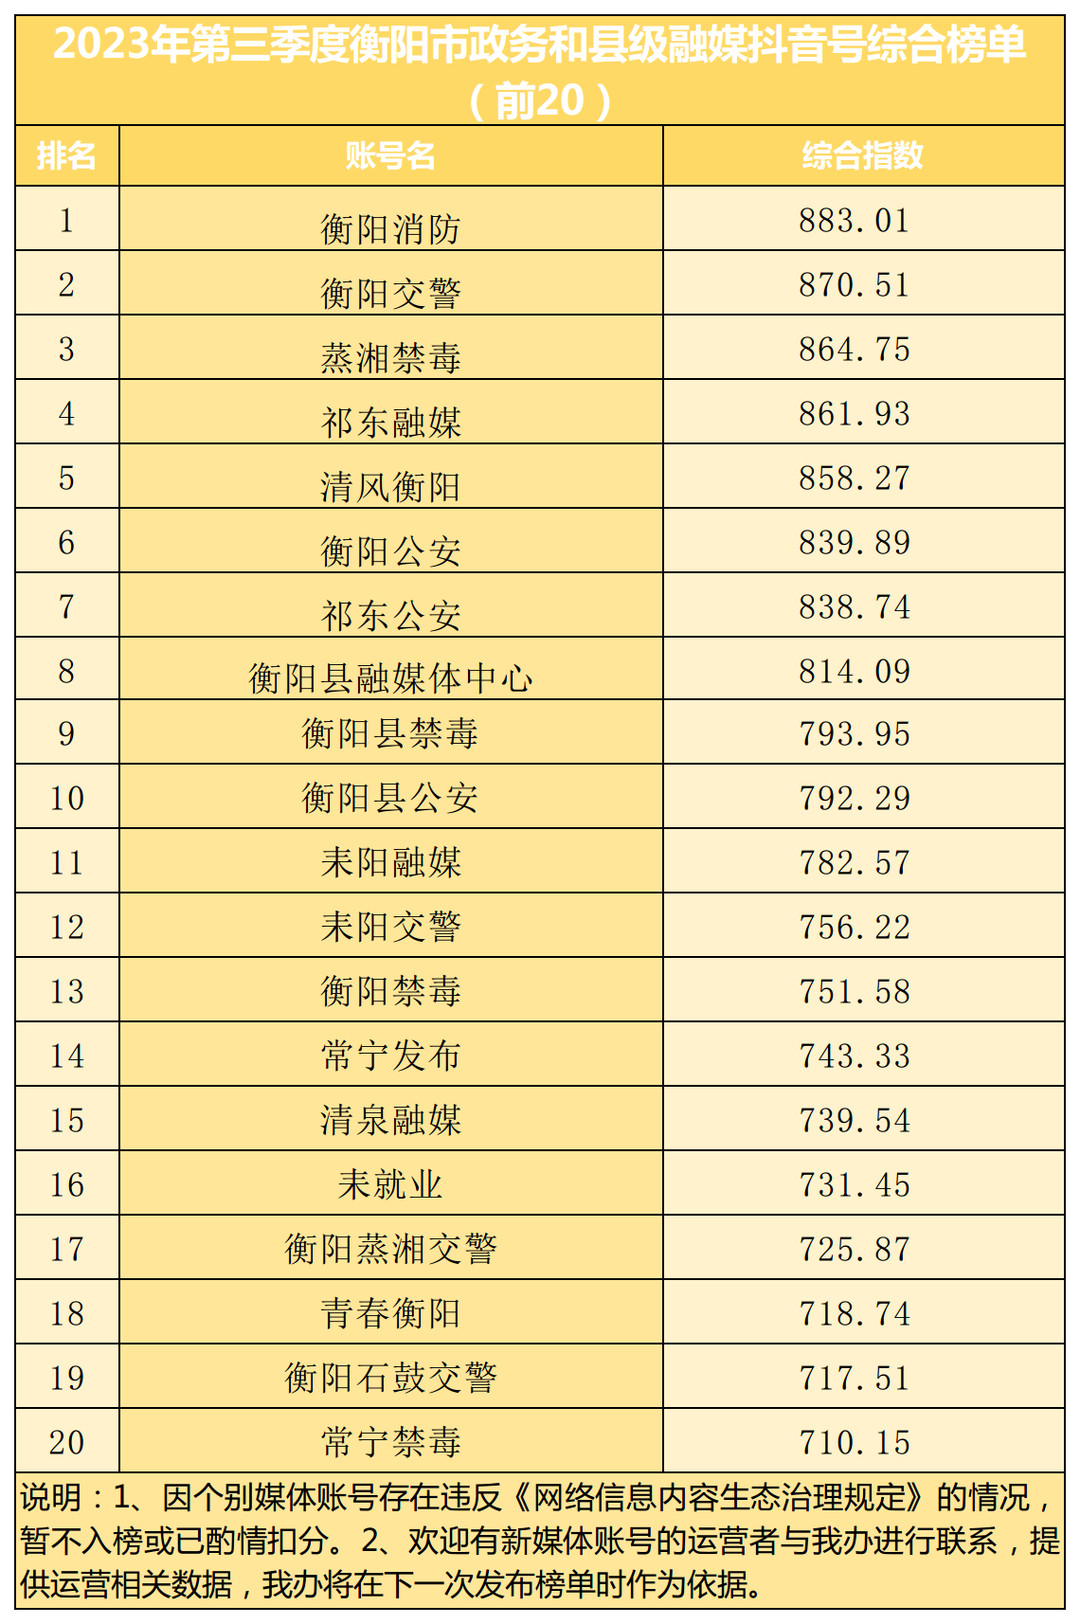 (领导批审版)2023第3季度政务媒体抖音榜单.png